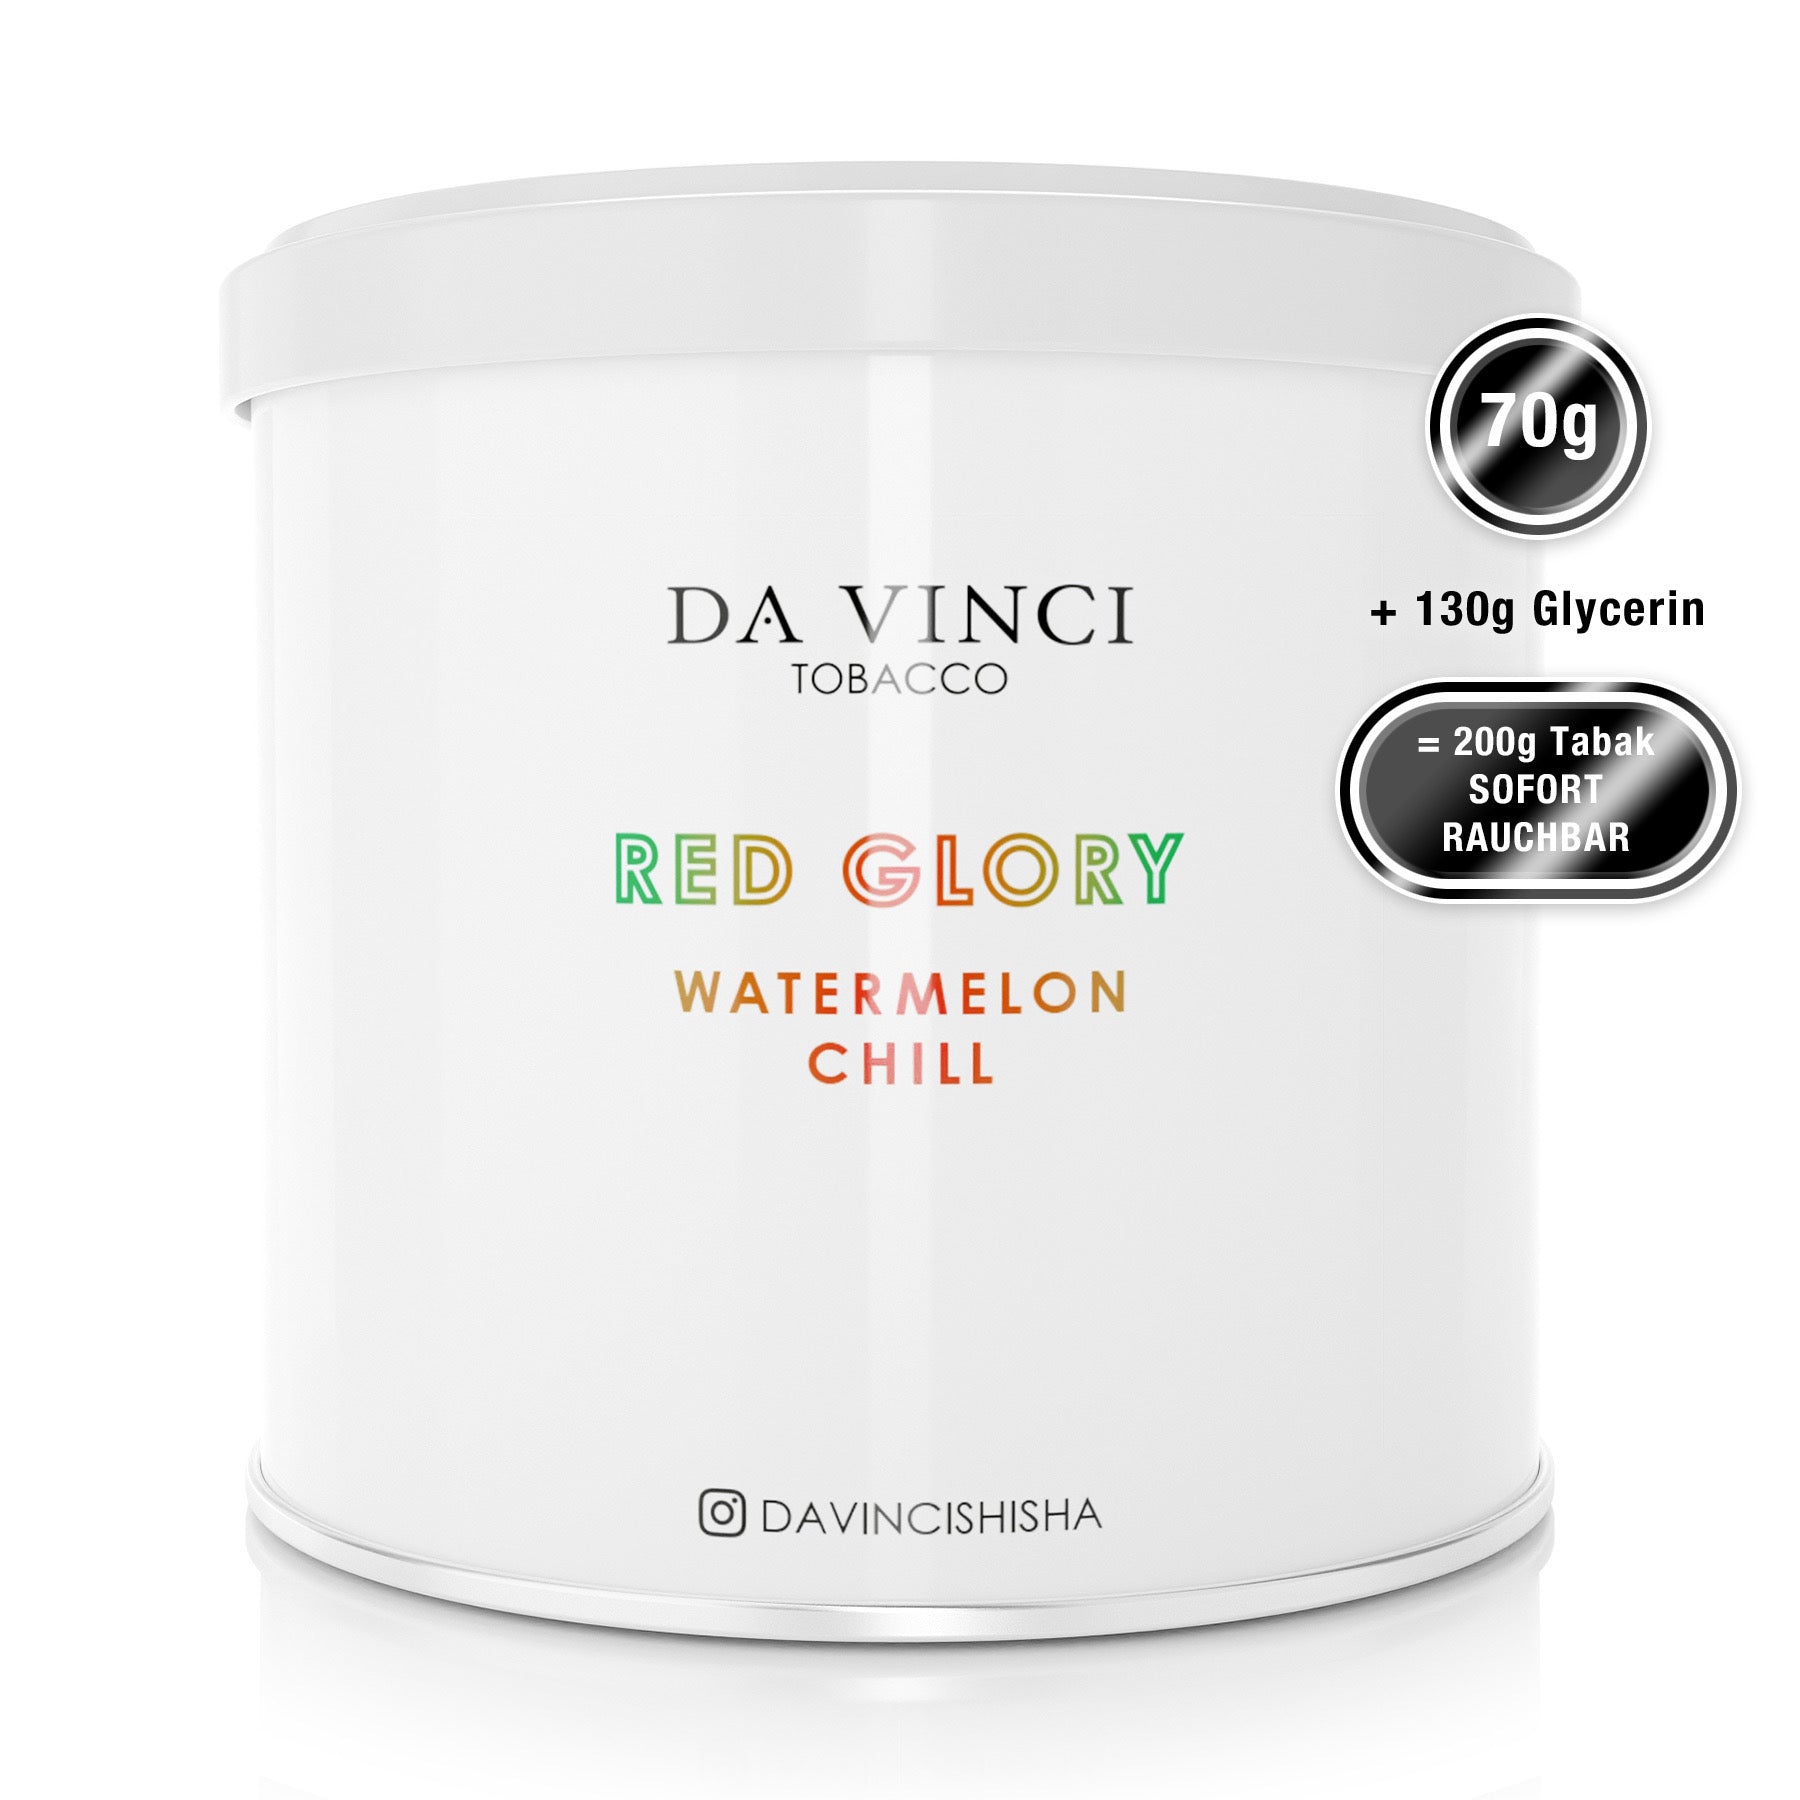 DA VINCI – RED GLORY 70g Tabak (8692893221196)